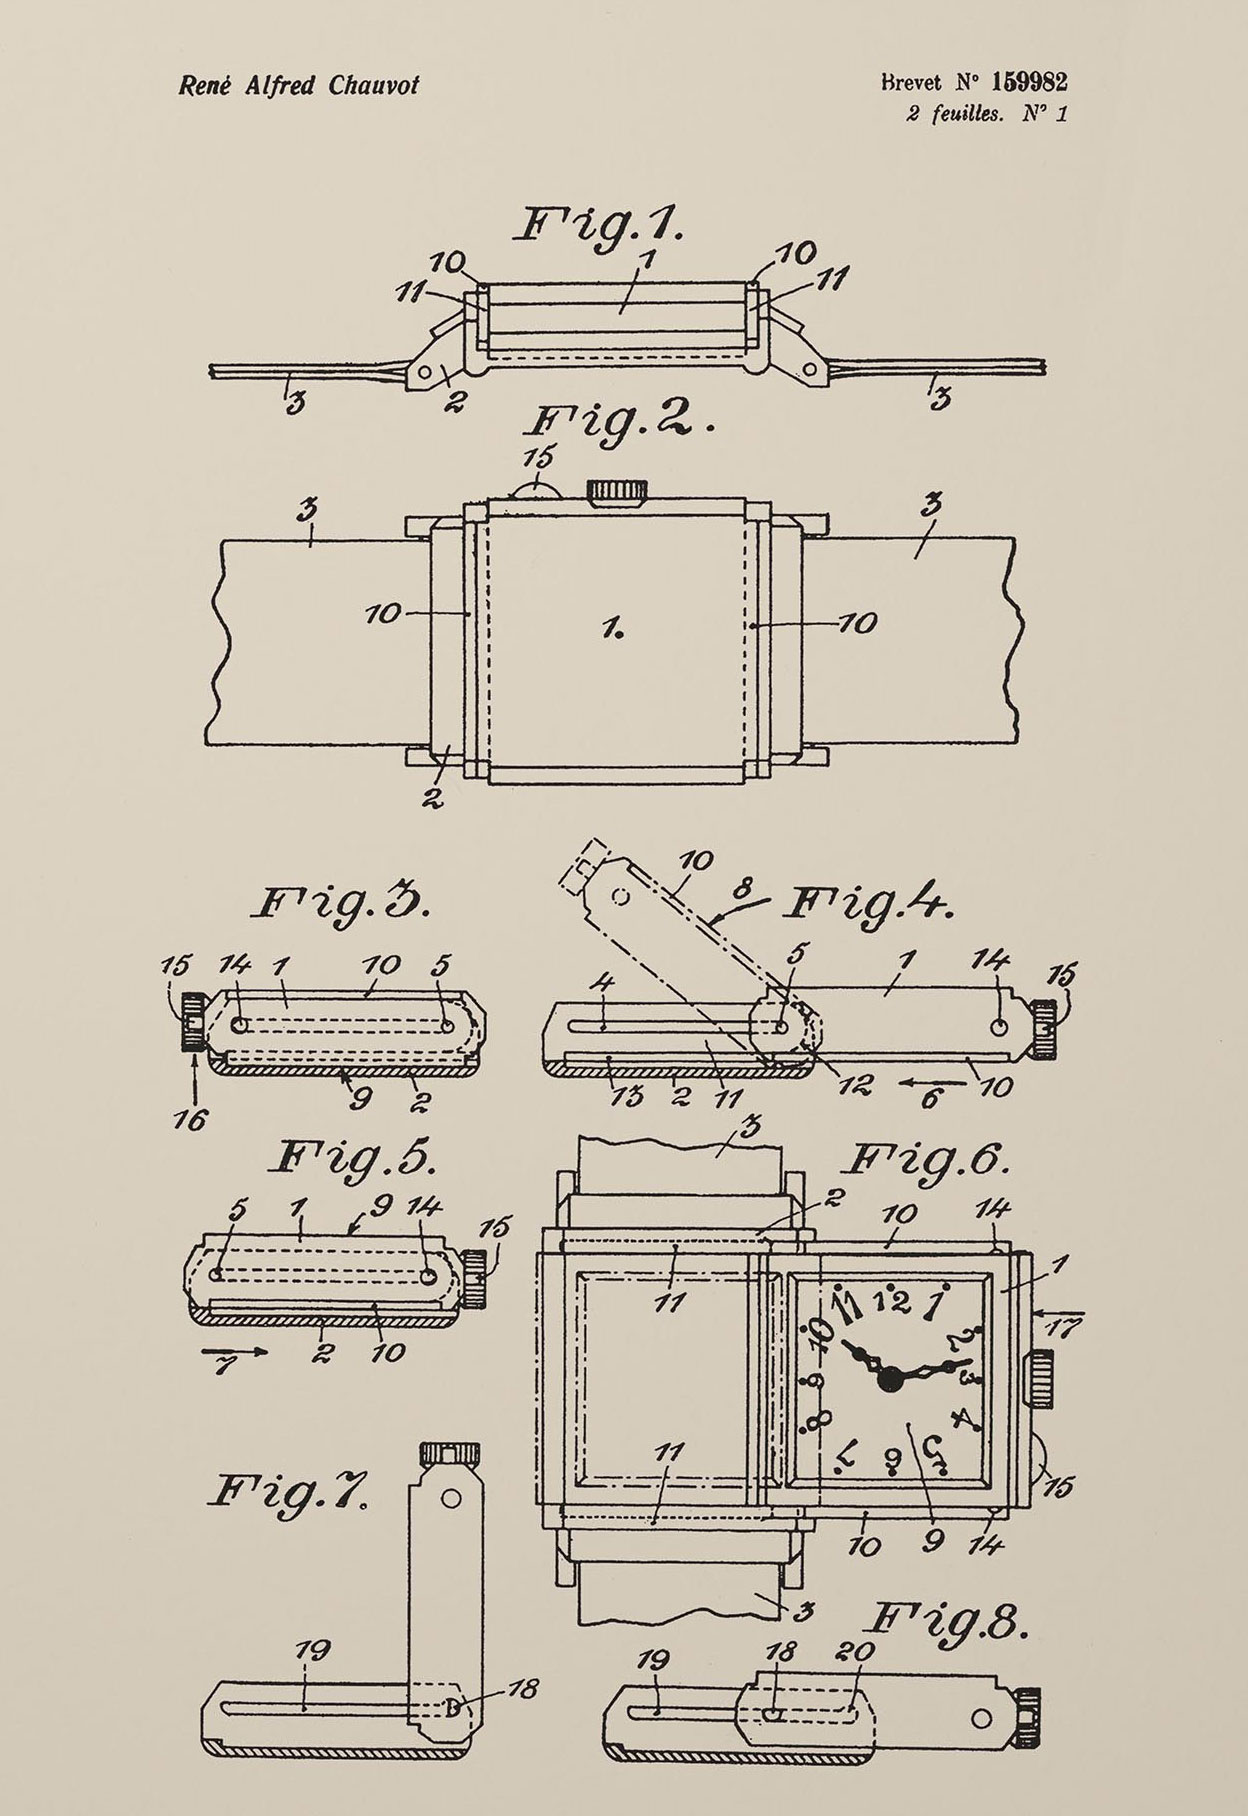 Dibujo de la patente original del Reverso